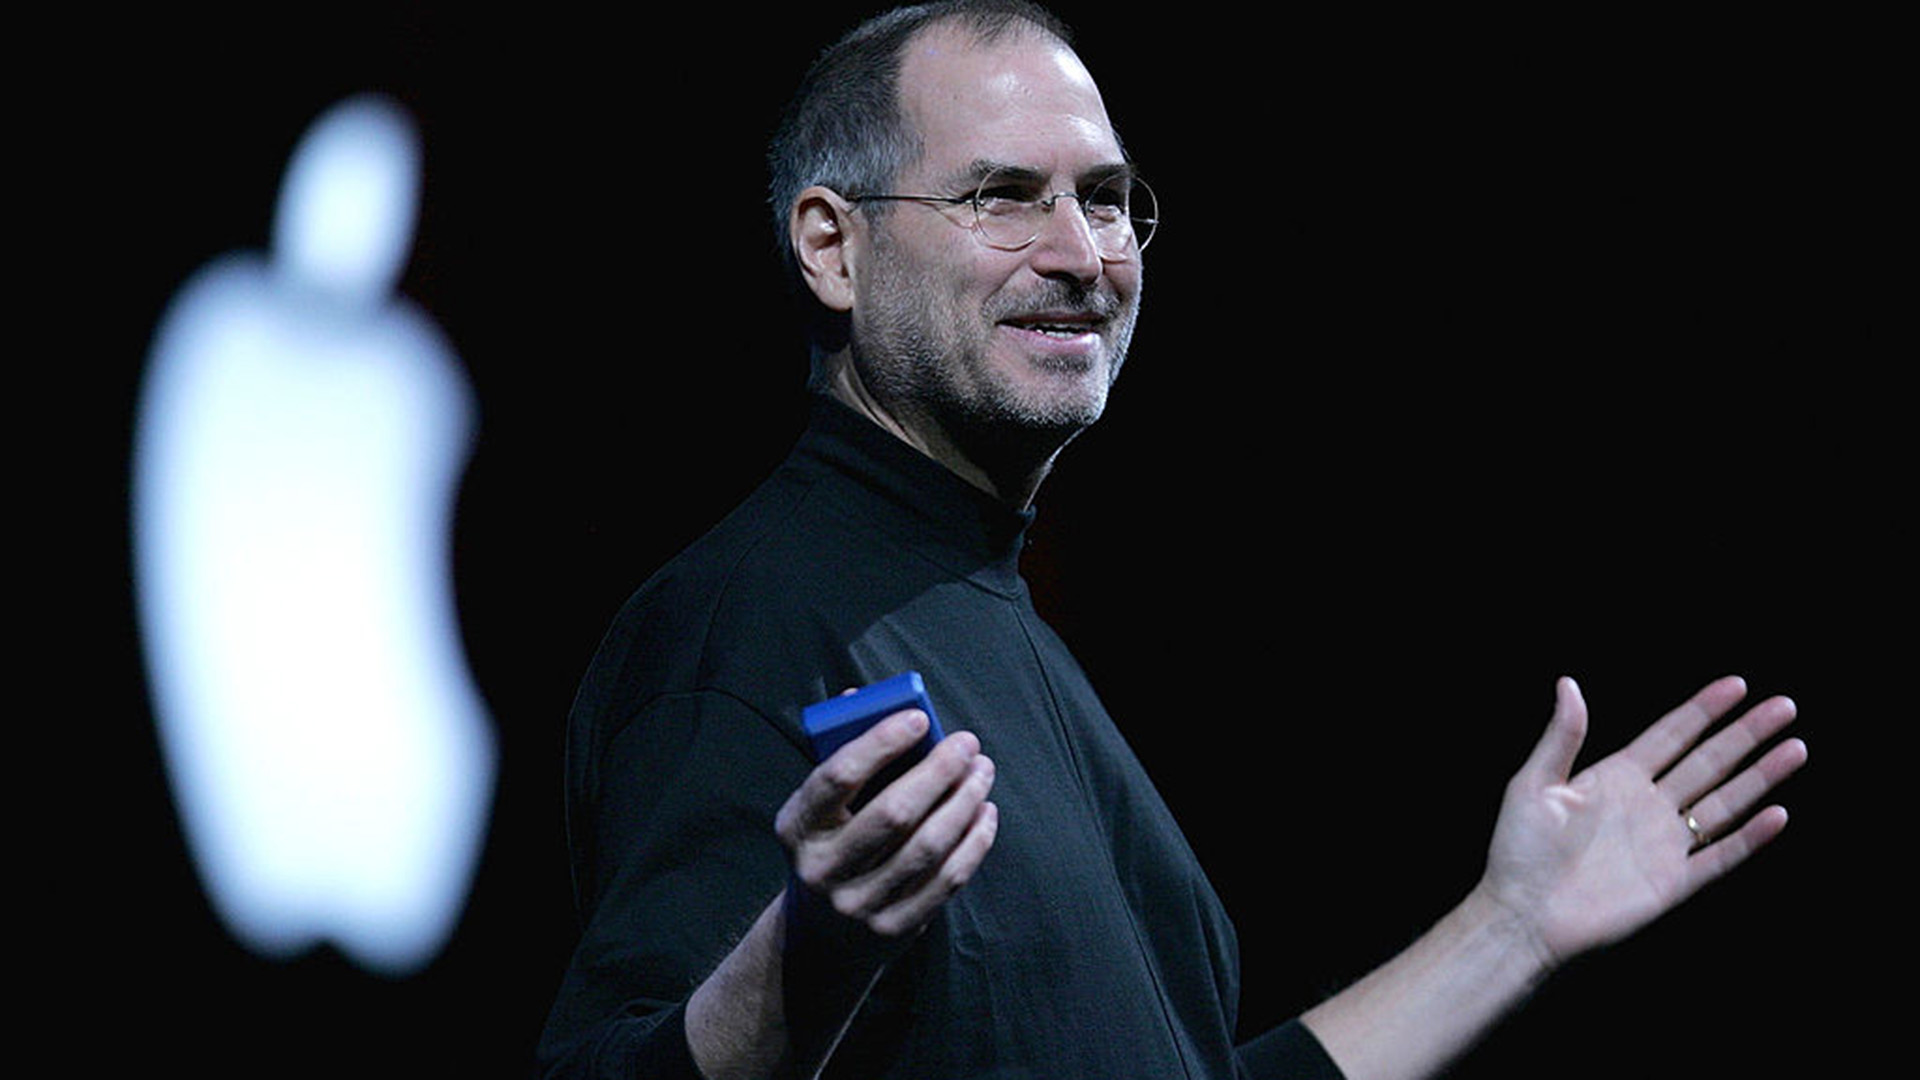 La aplicación de Microsoft que no le gustaba a Steve Jobs y que todos usan